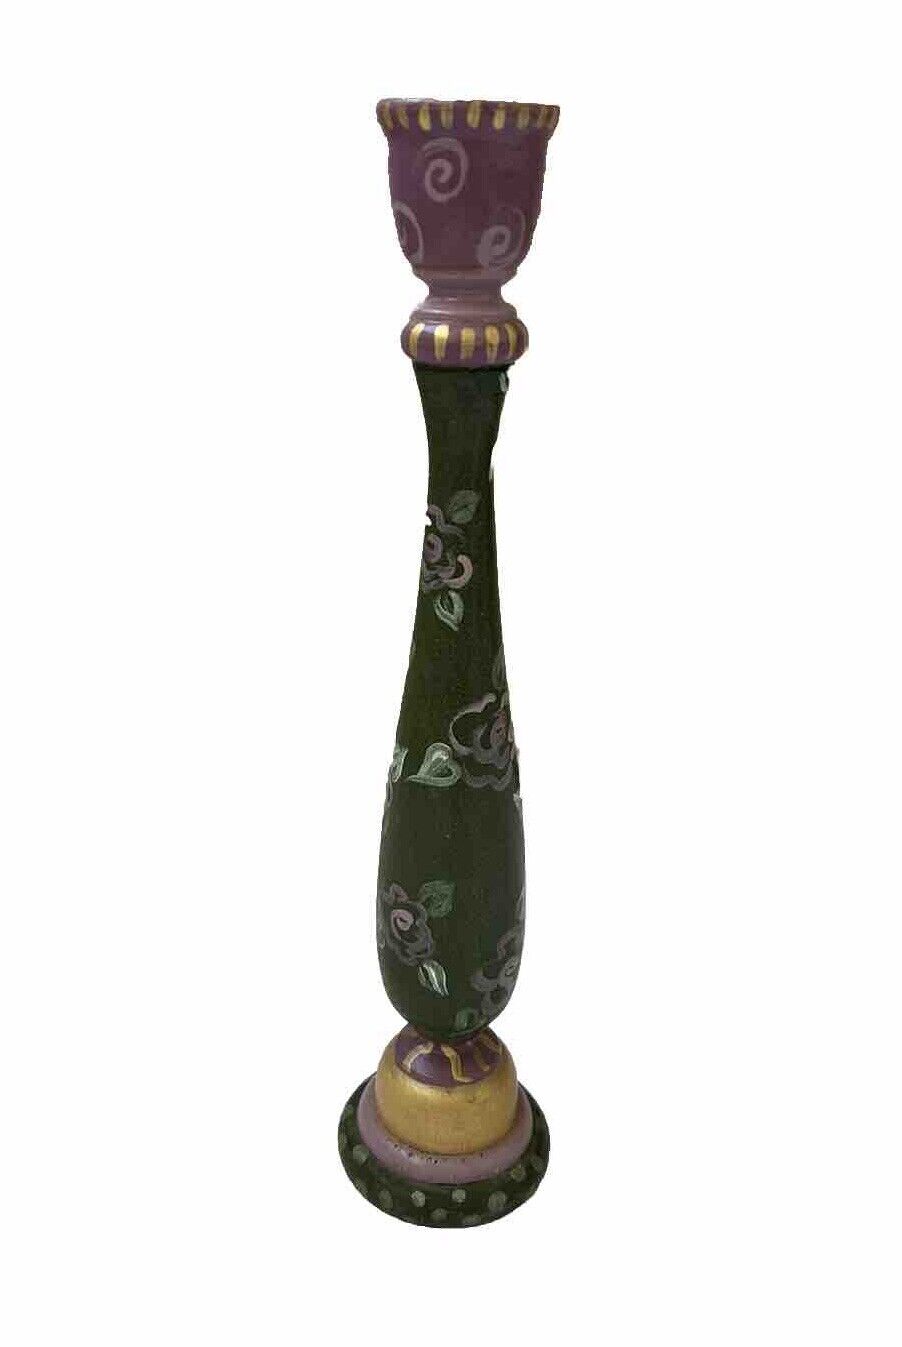 Folk Art Vintage Hand Painted Wooden Candlestick Holder ~ Floral Roses